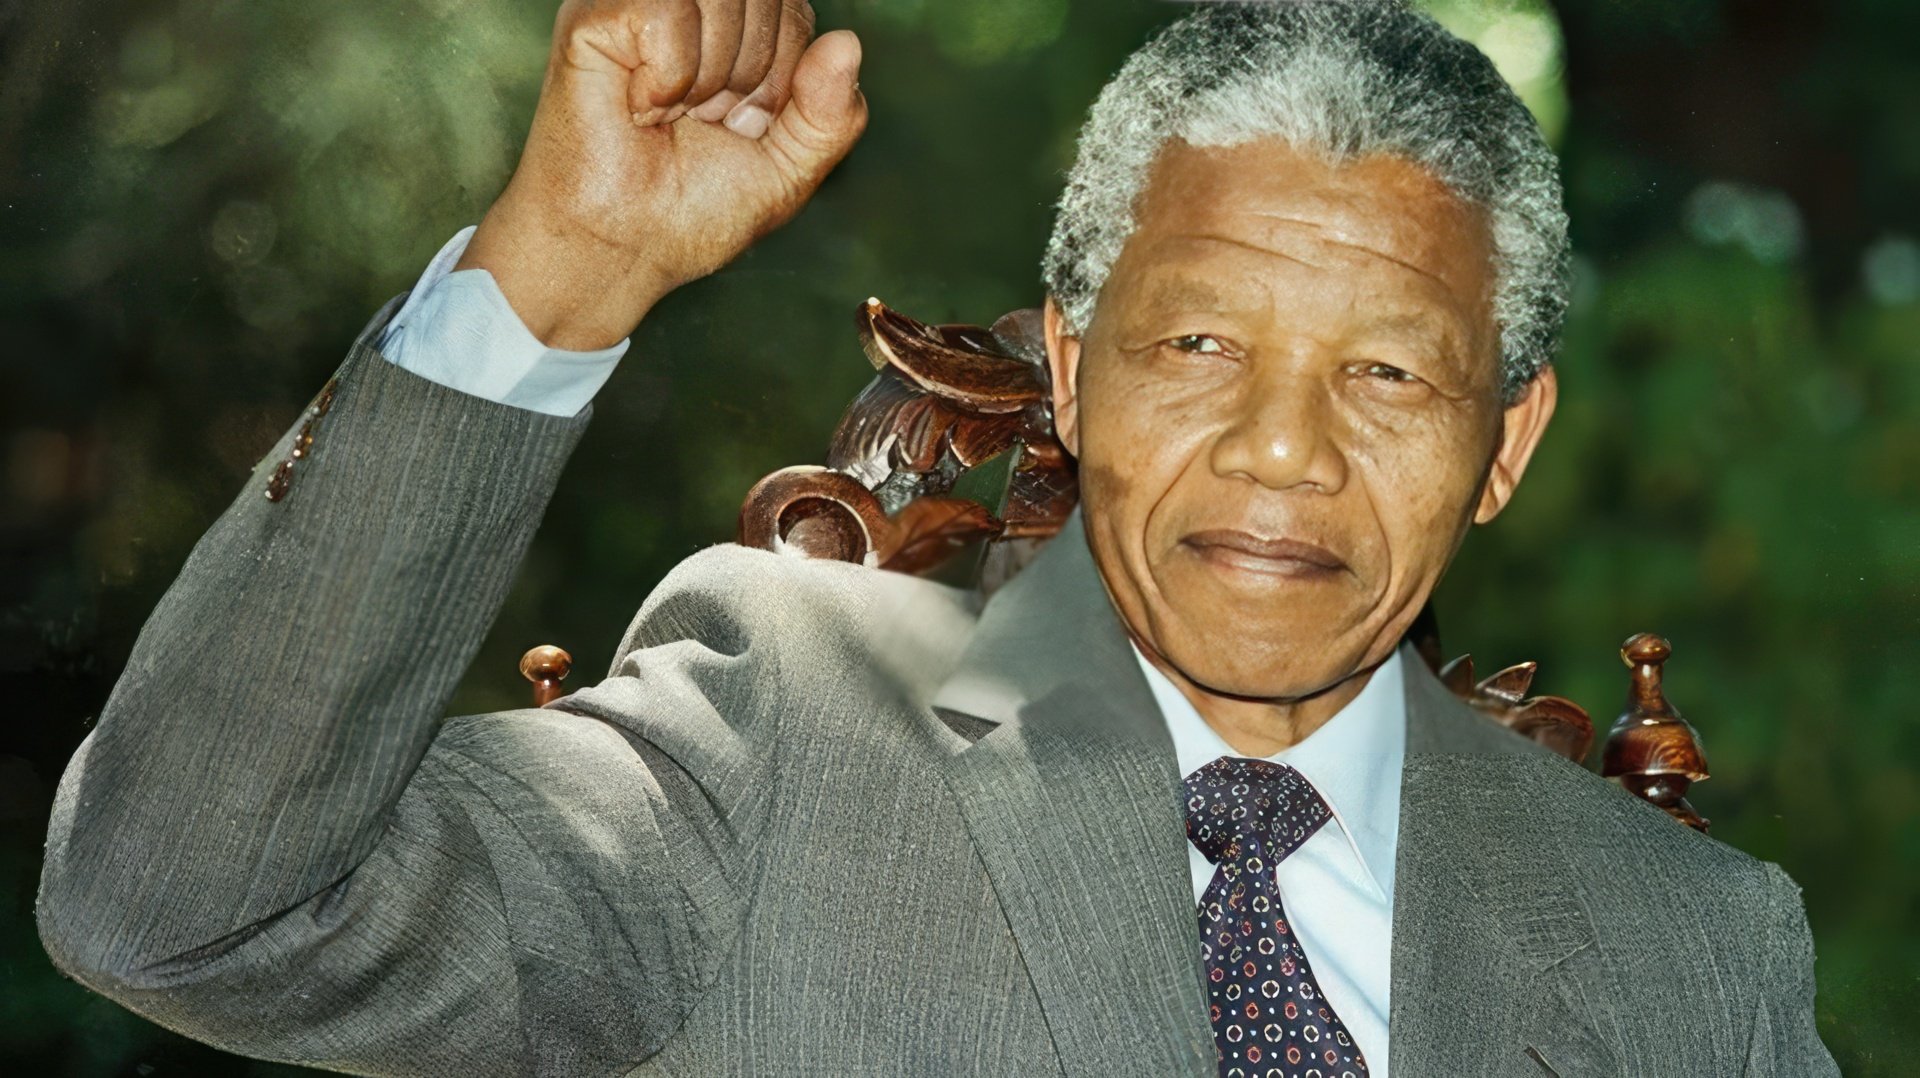 In 1994, Nelson Mandela became the president